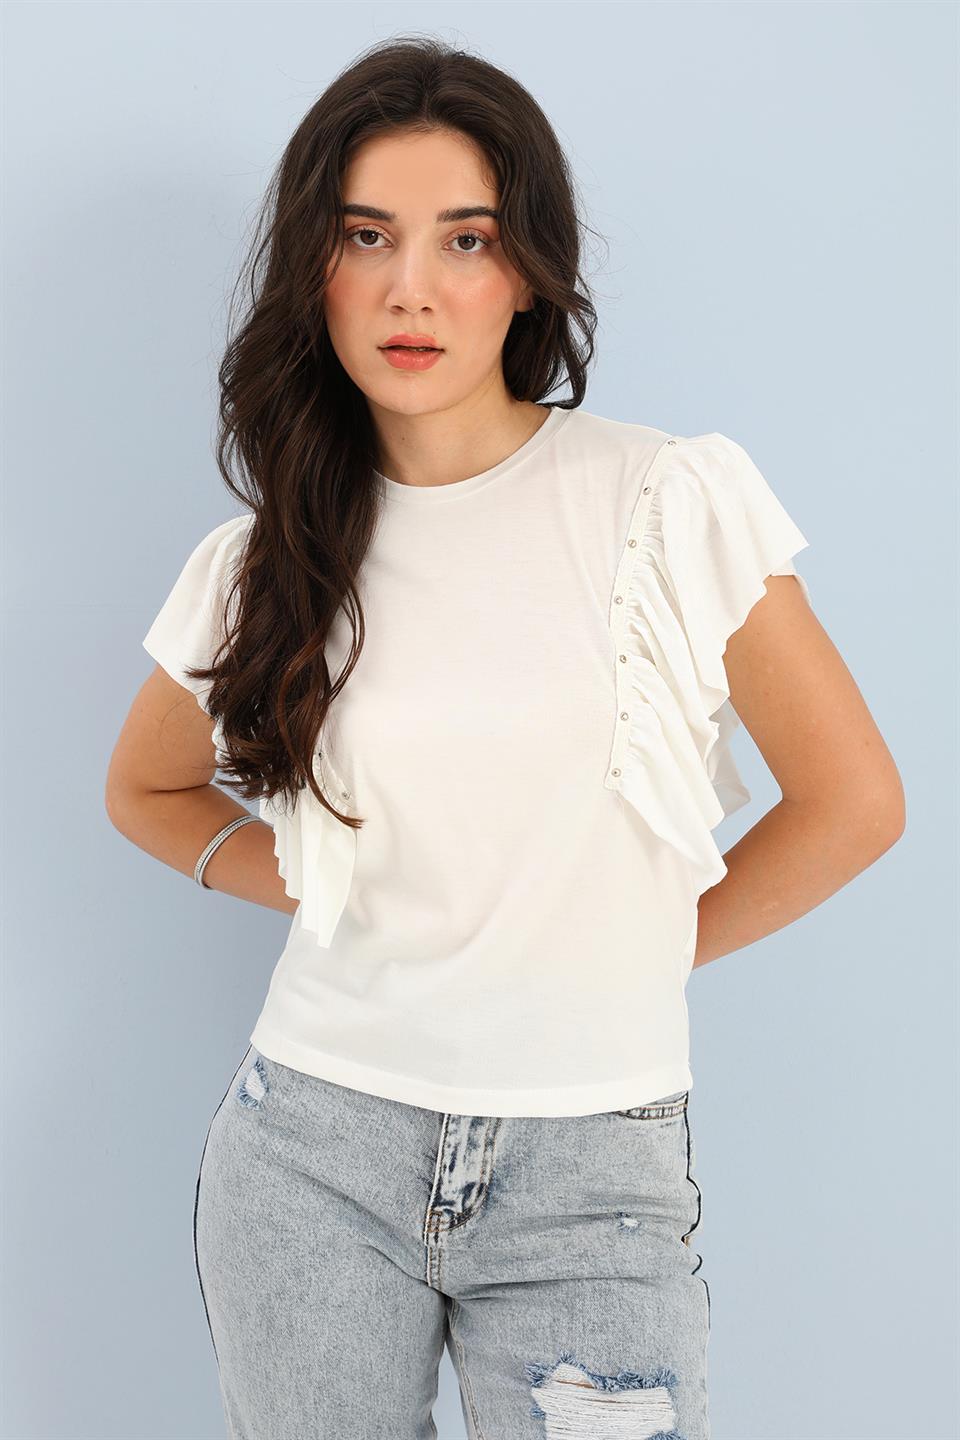 Women's T-shirt Crew Neck Ruffled Sleeves - White - STREETMODE™